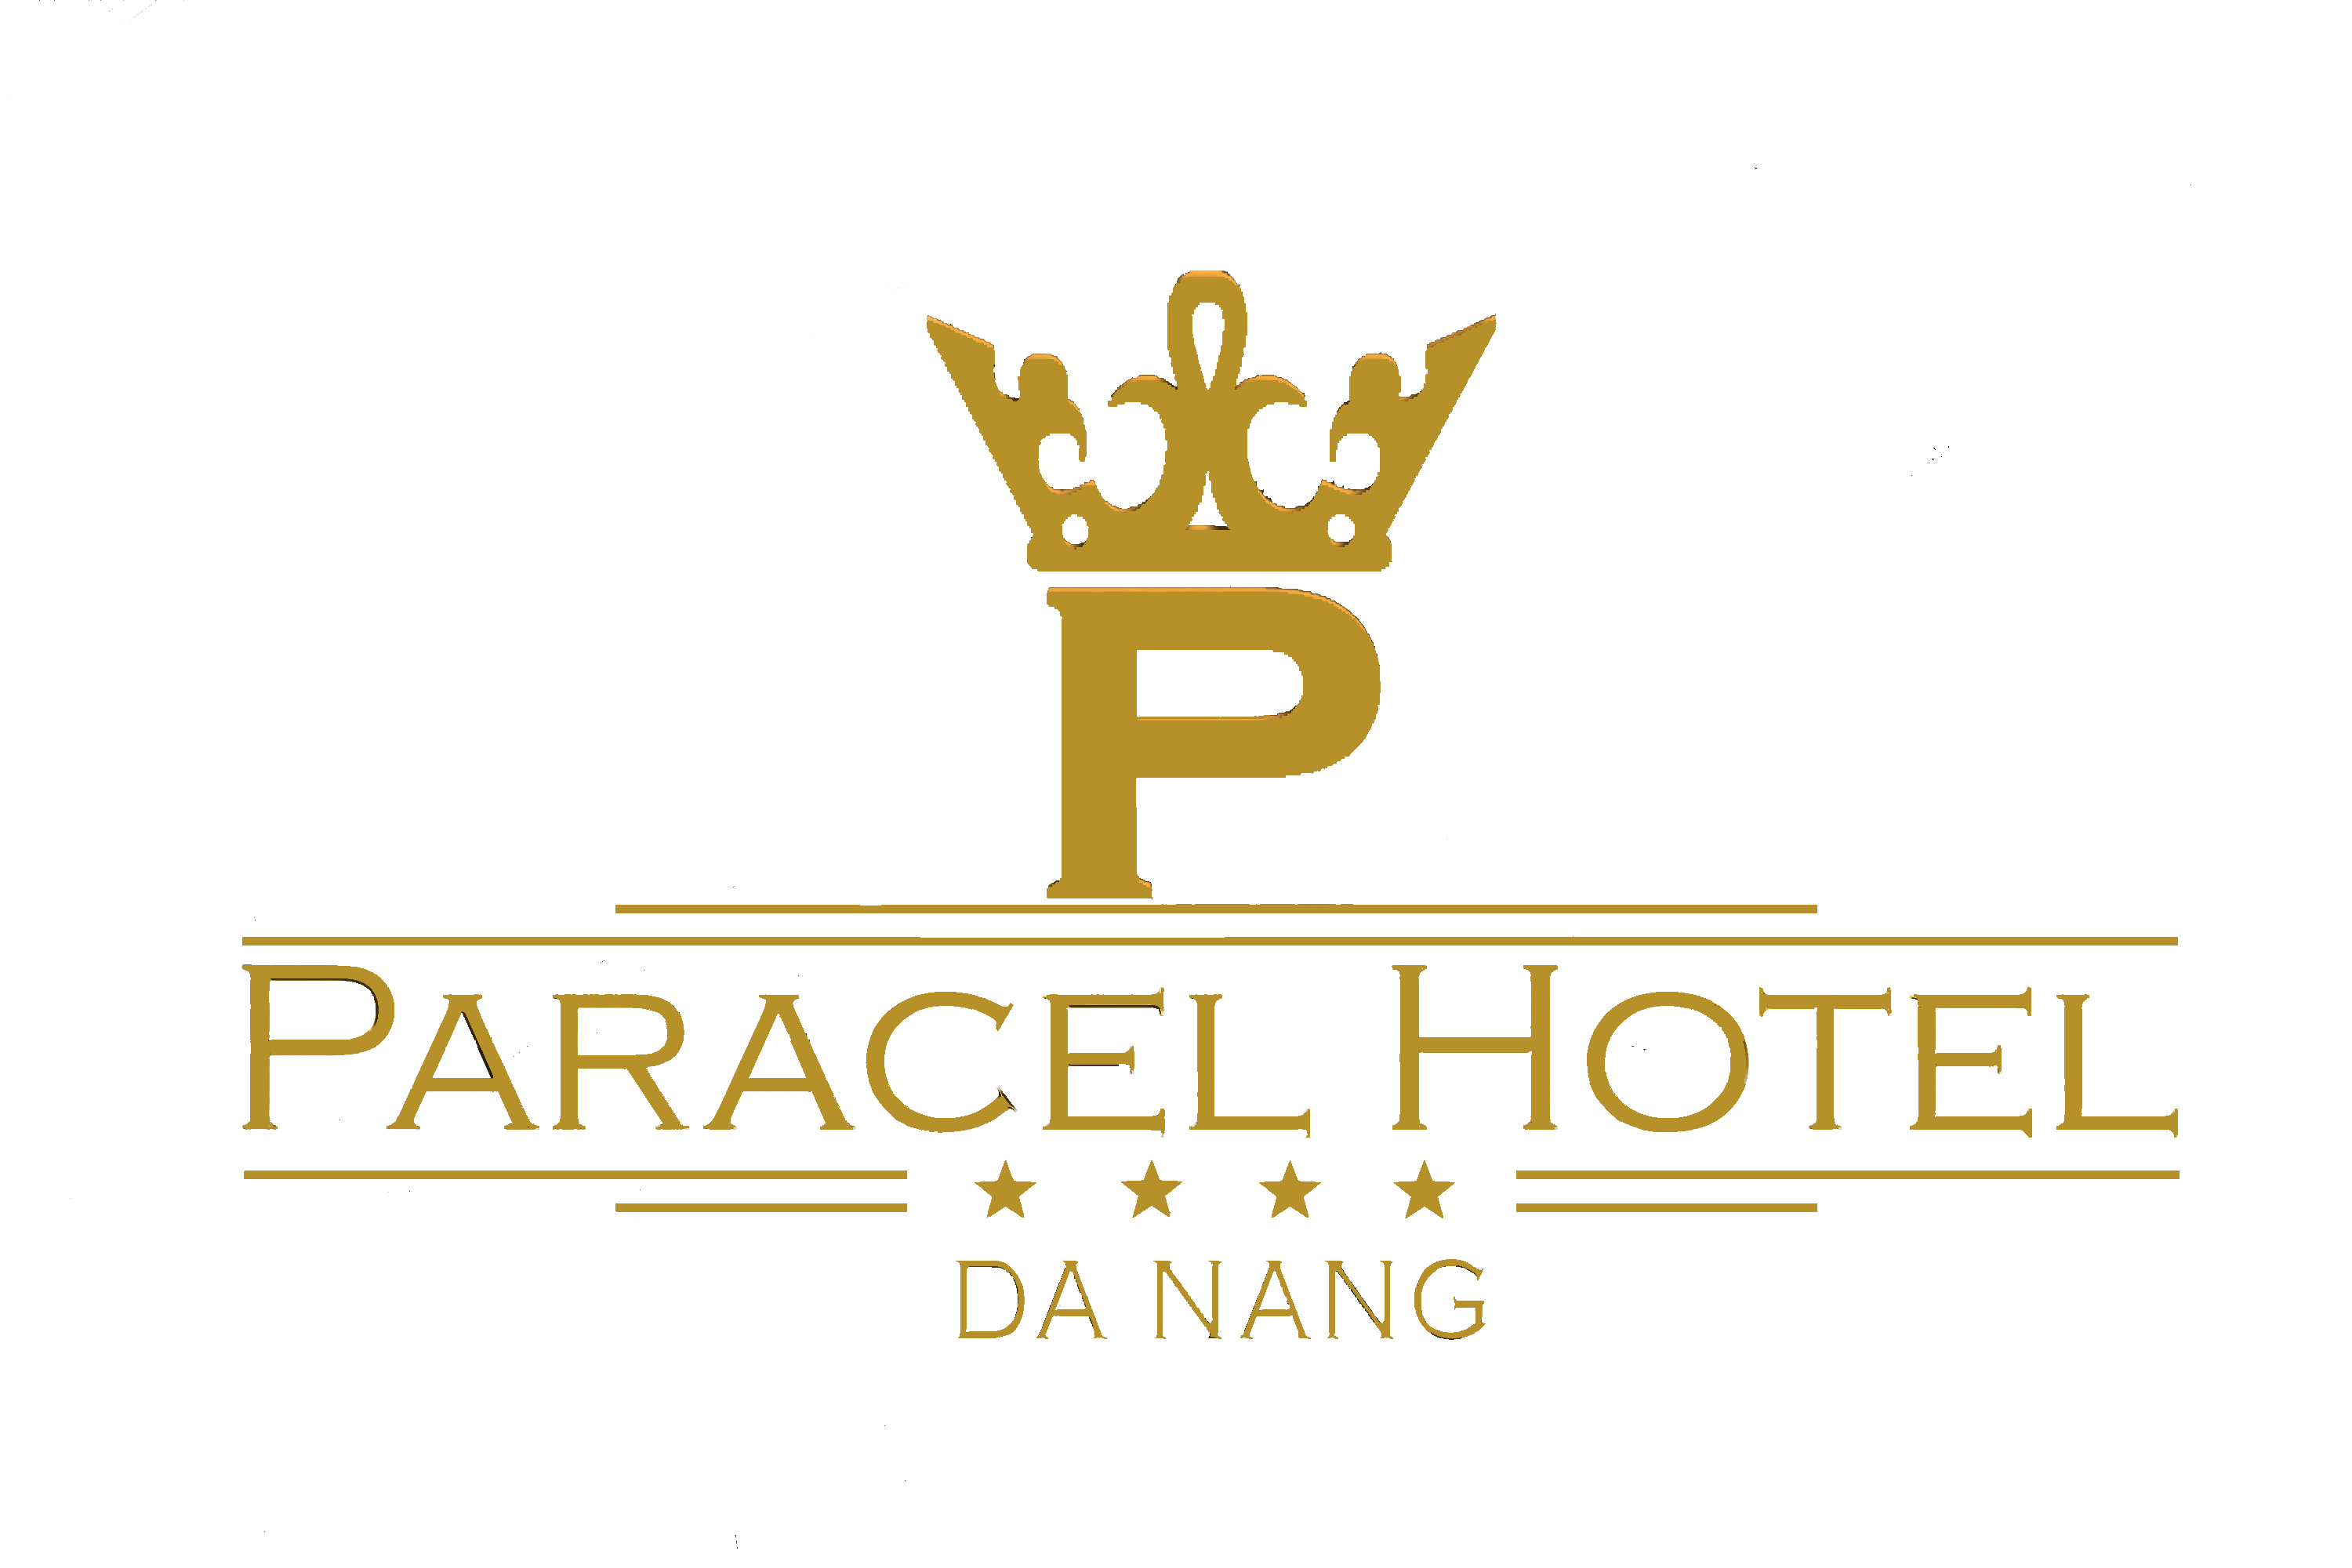 Paracel Hotel Danang